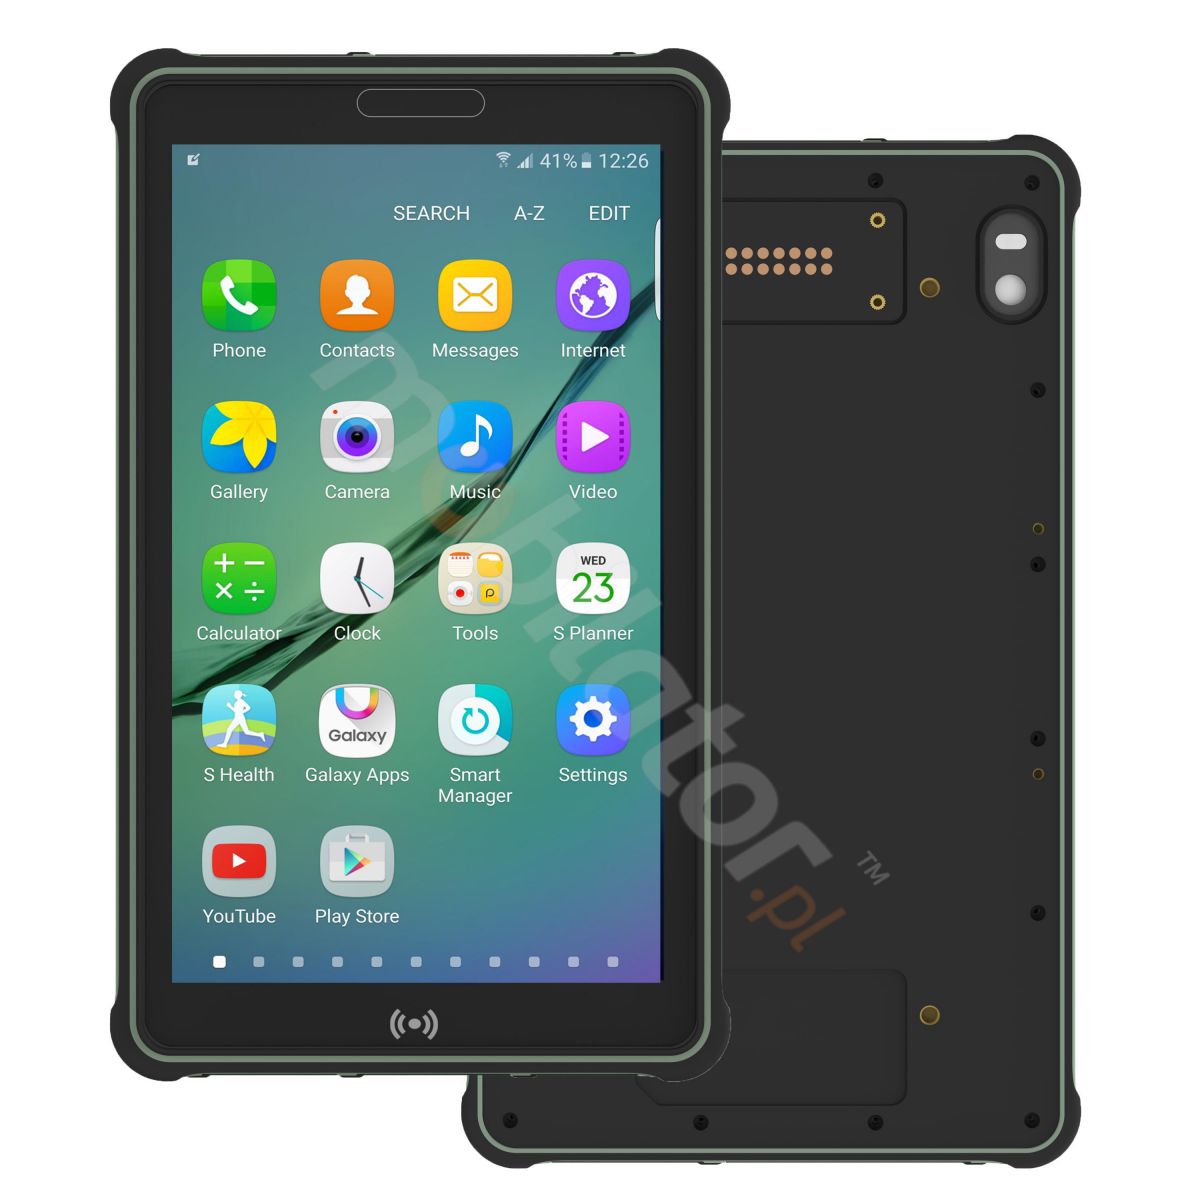 Przemysowy 8-calowy, wzmocniony tablet z dyskiem 128GB ROM oraz 6GB RAM pamici, systemem operacyjnym Android 7.0, 4G, norm IP65 i NFC - Mobipad 800ATS3 v.1